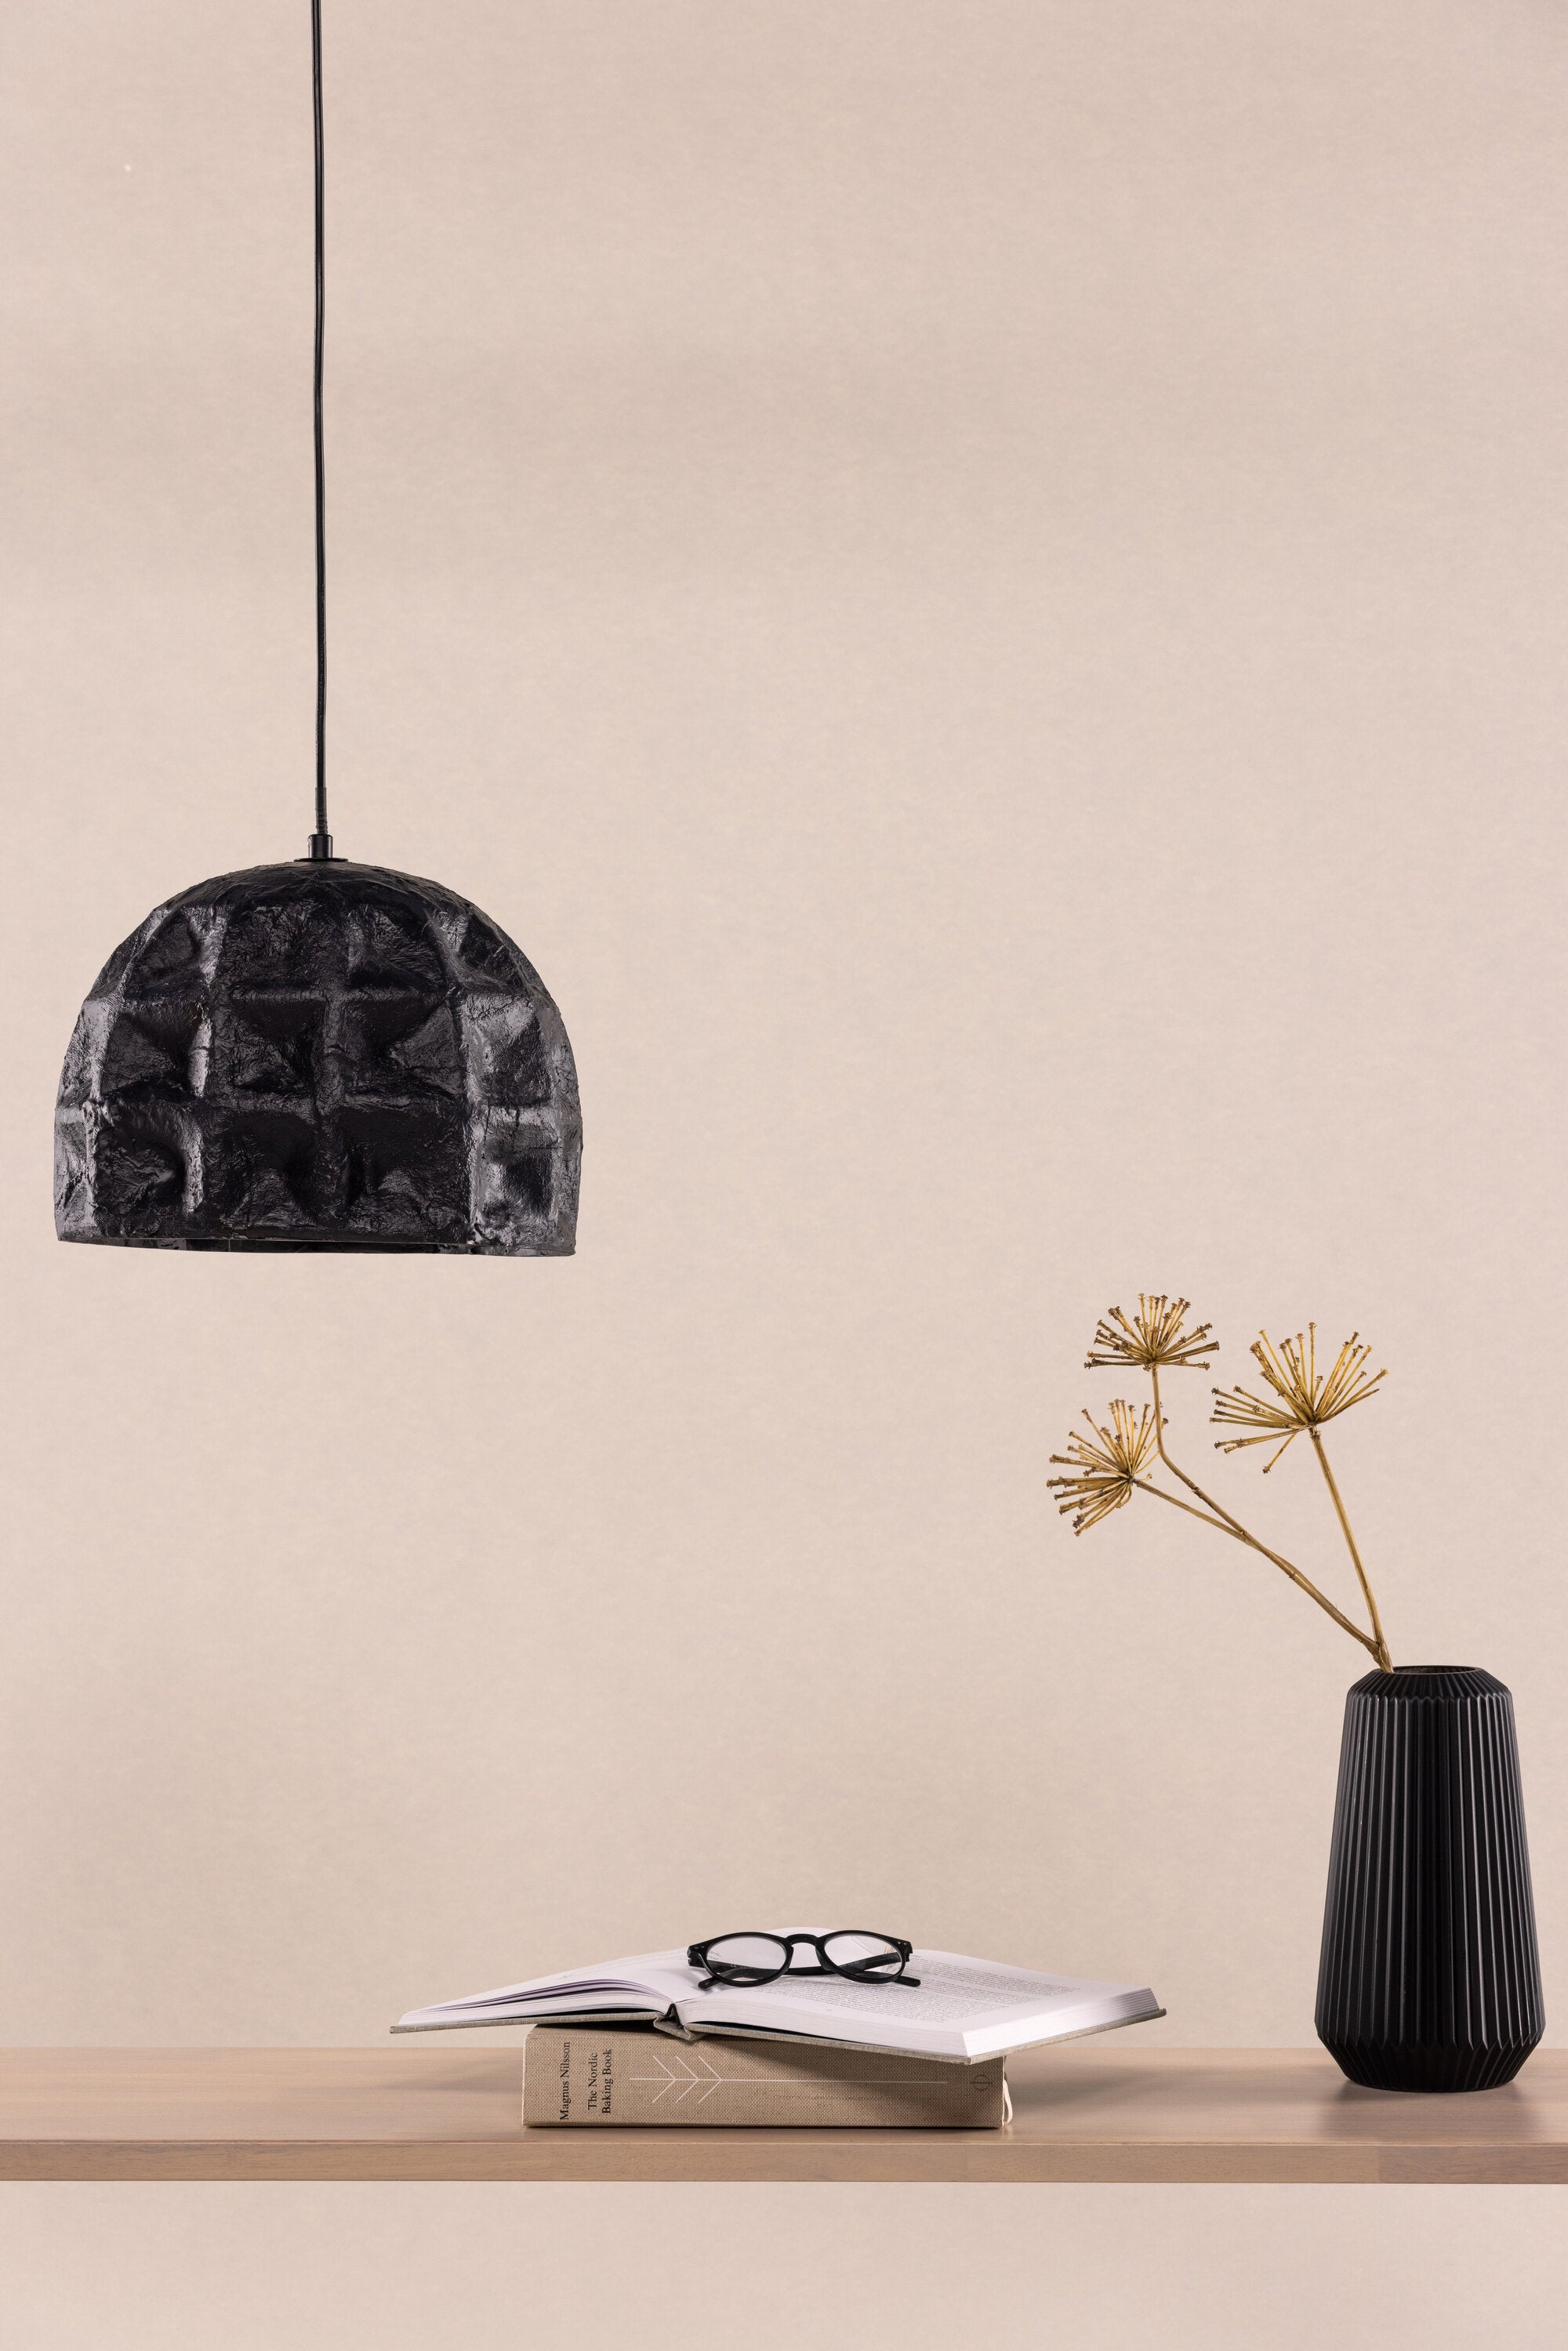 Hogstorp Pendelleuchte in Schwarz präsentiert im Onlineshop von KAQTU Design AG. Pendelleuchte ist von Vind